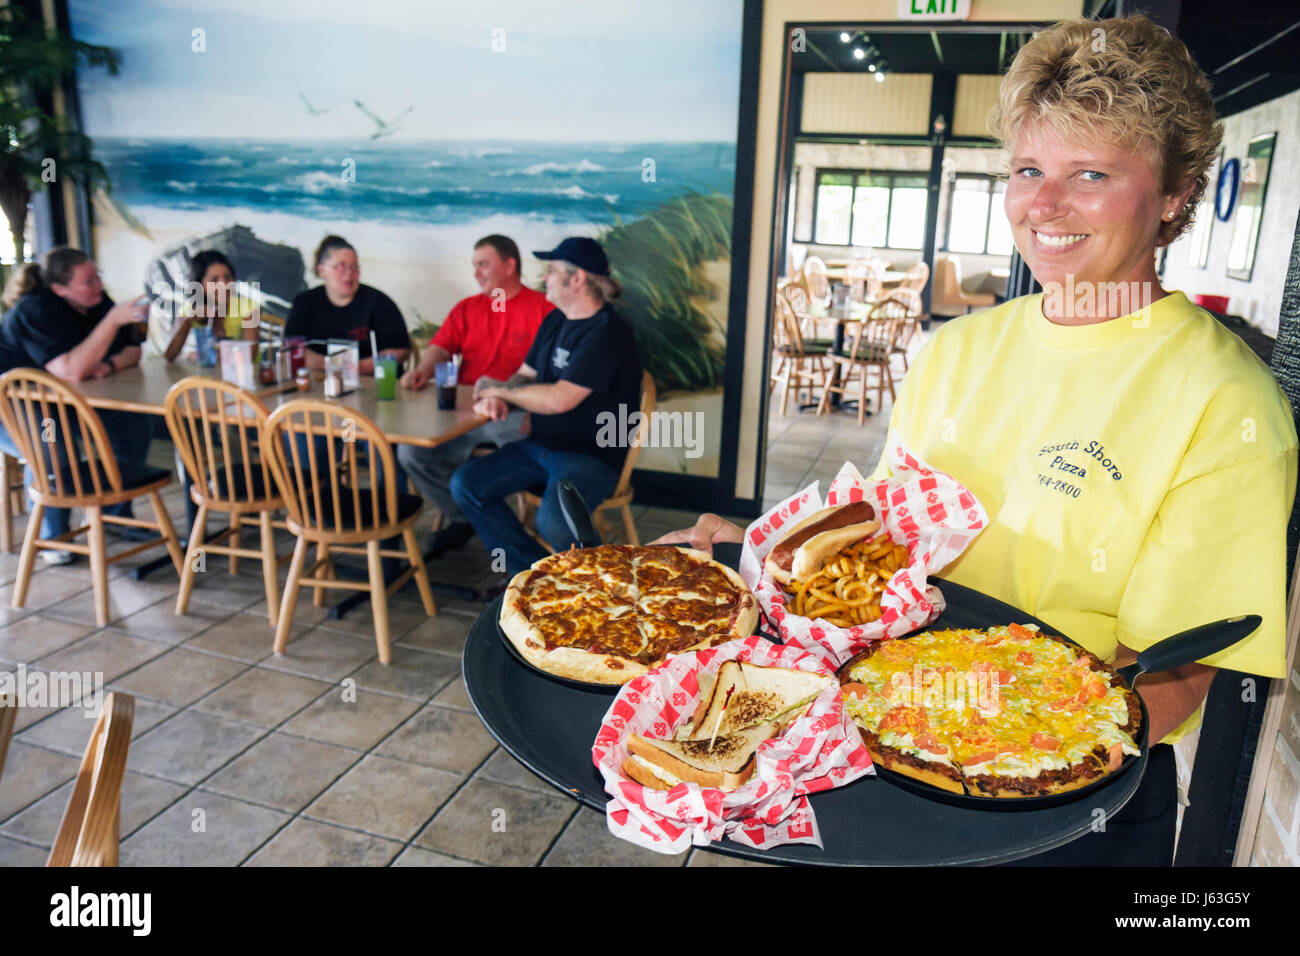 Indiana Portage, South Shore Pizza, restaurant restaurants repas manger dehors café cafés bistrot, service, adultes femme femmes femme femme, Wai Banque D'Images